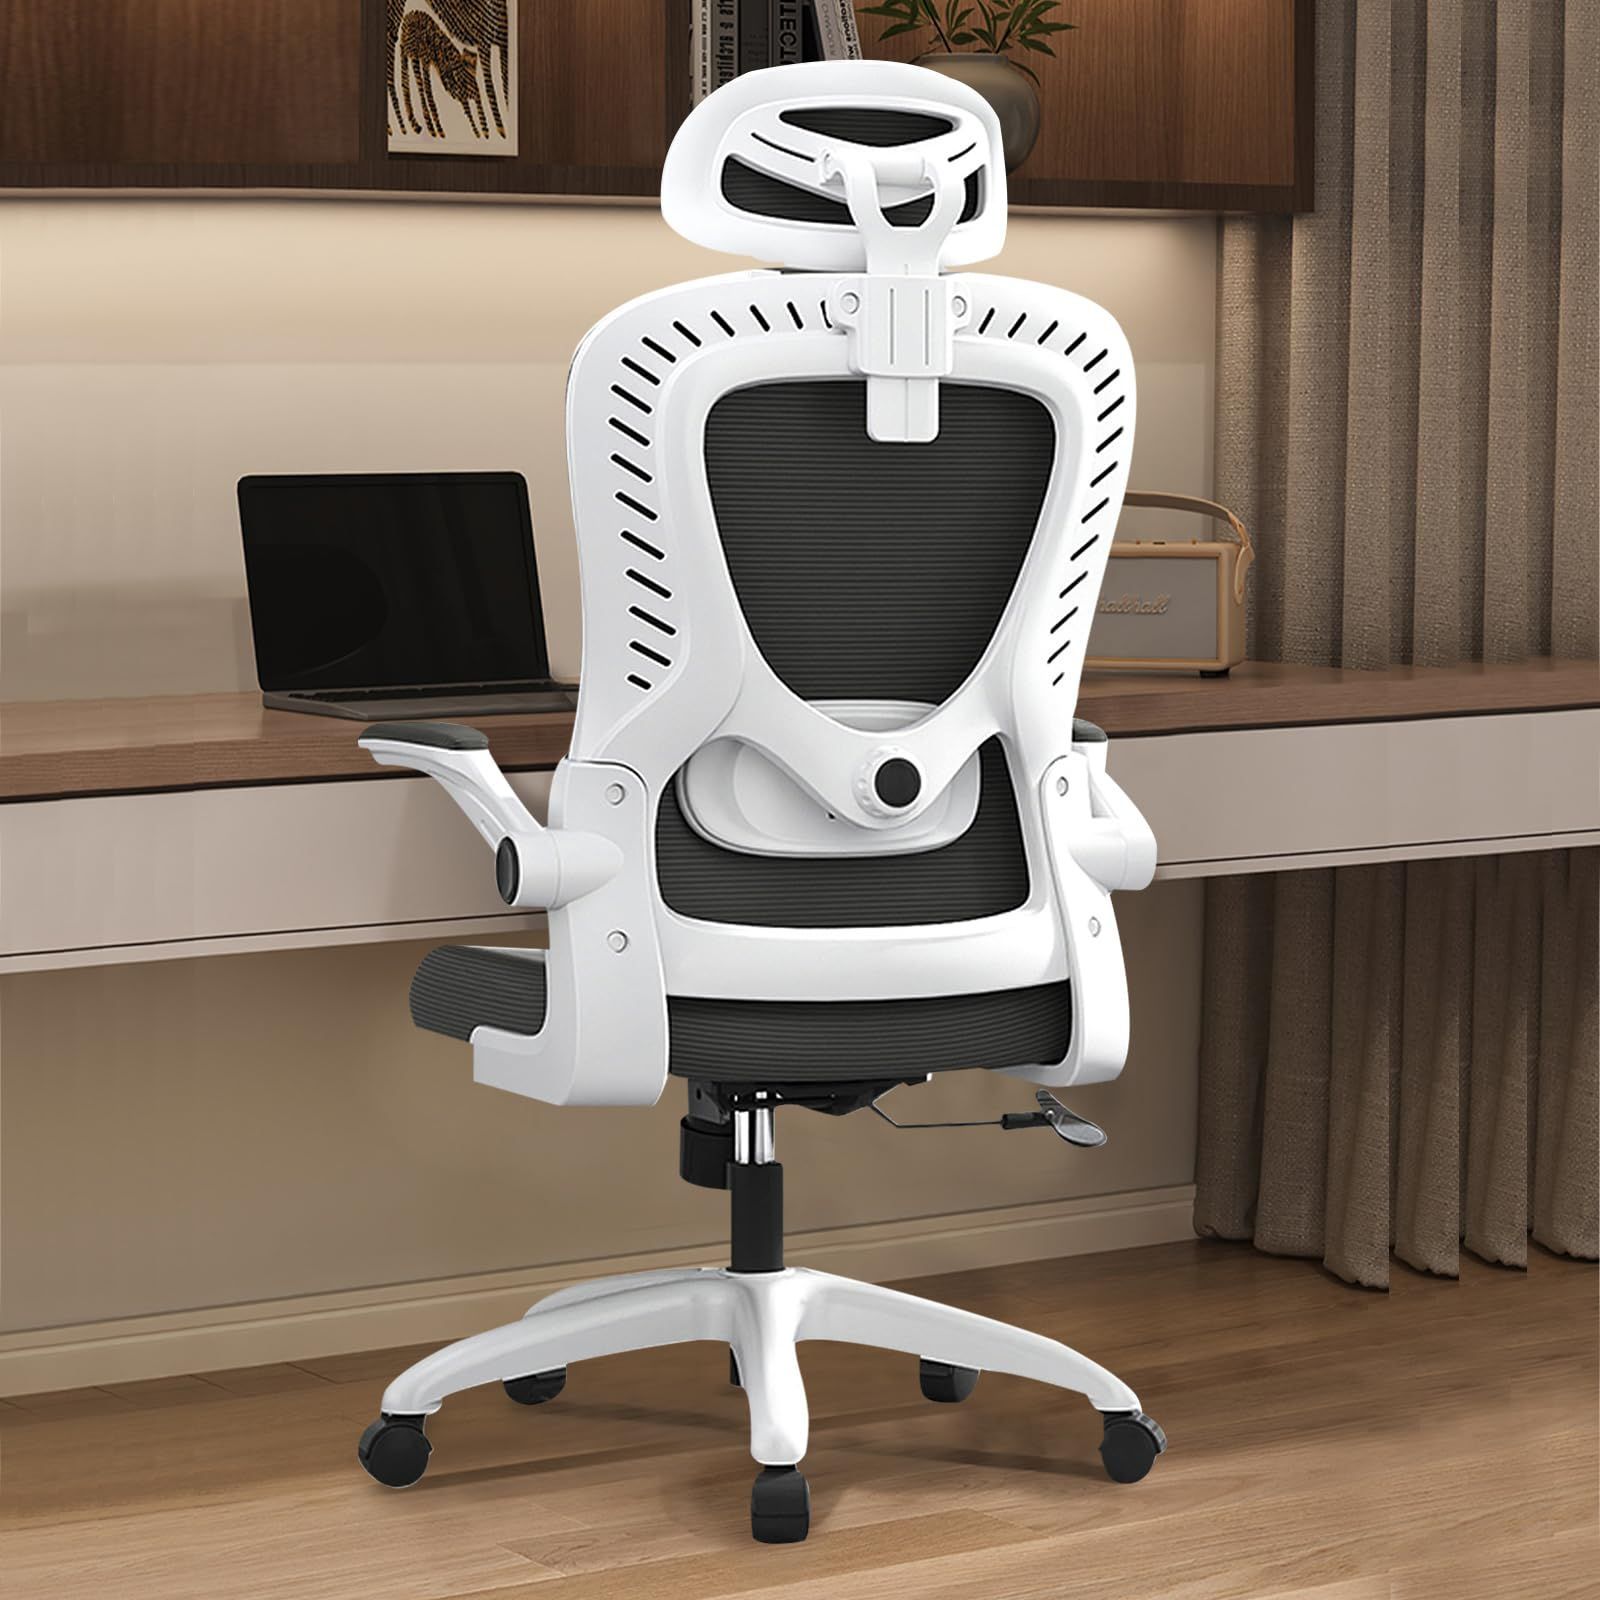 Fuwata オフィスチェア 椅子 パソコンチェア 人間工学デスクチェア S字構-